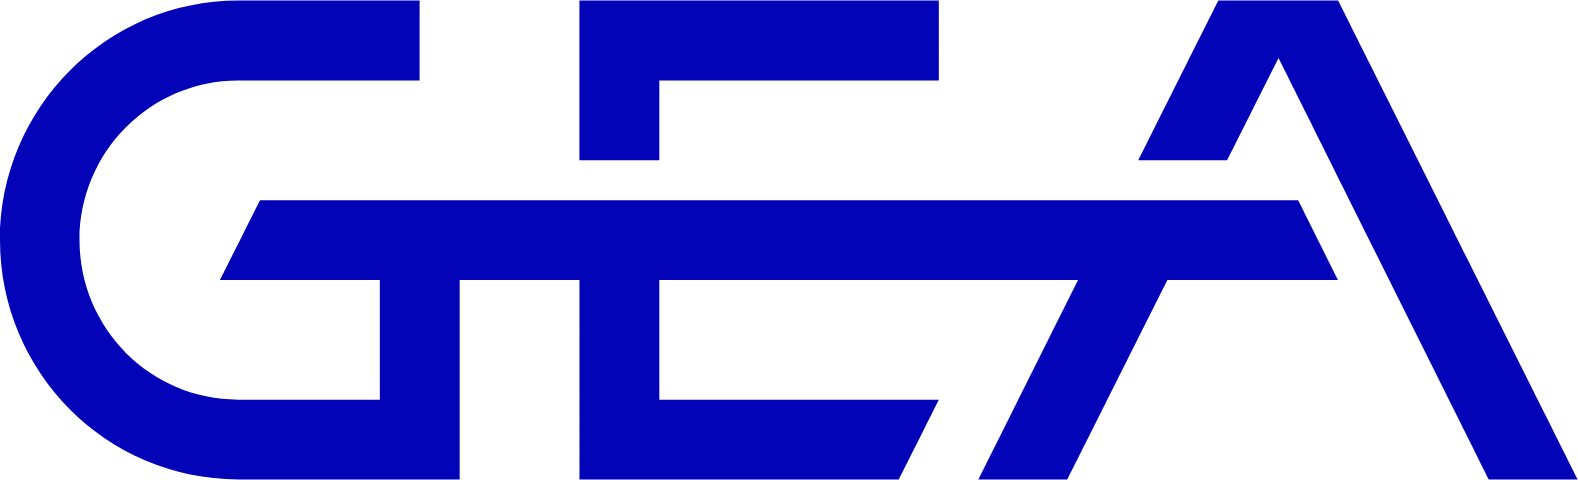 GEA Group
 logo (PNG transparent)